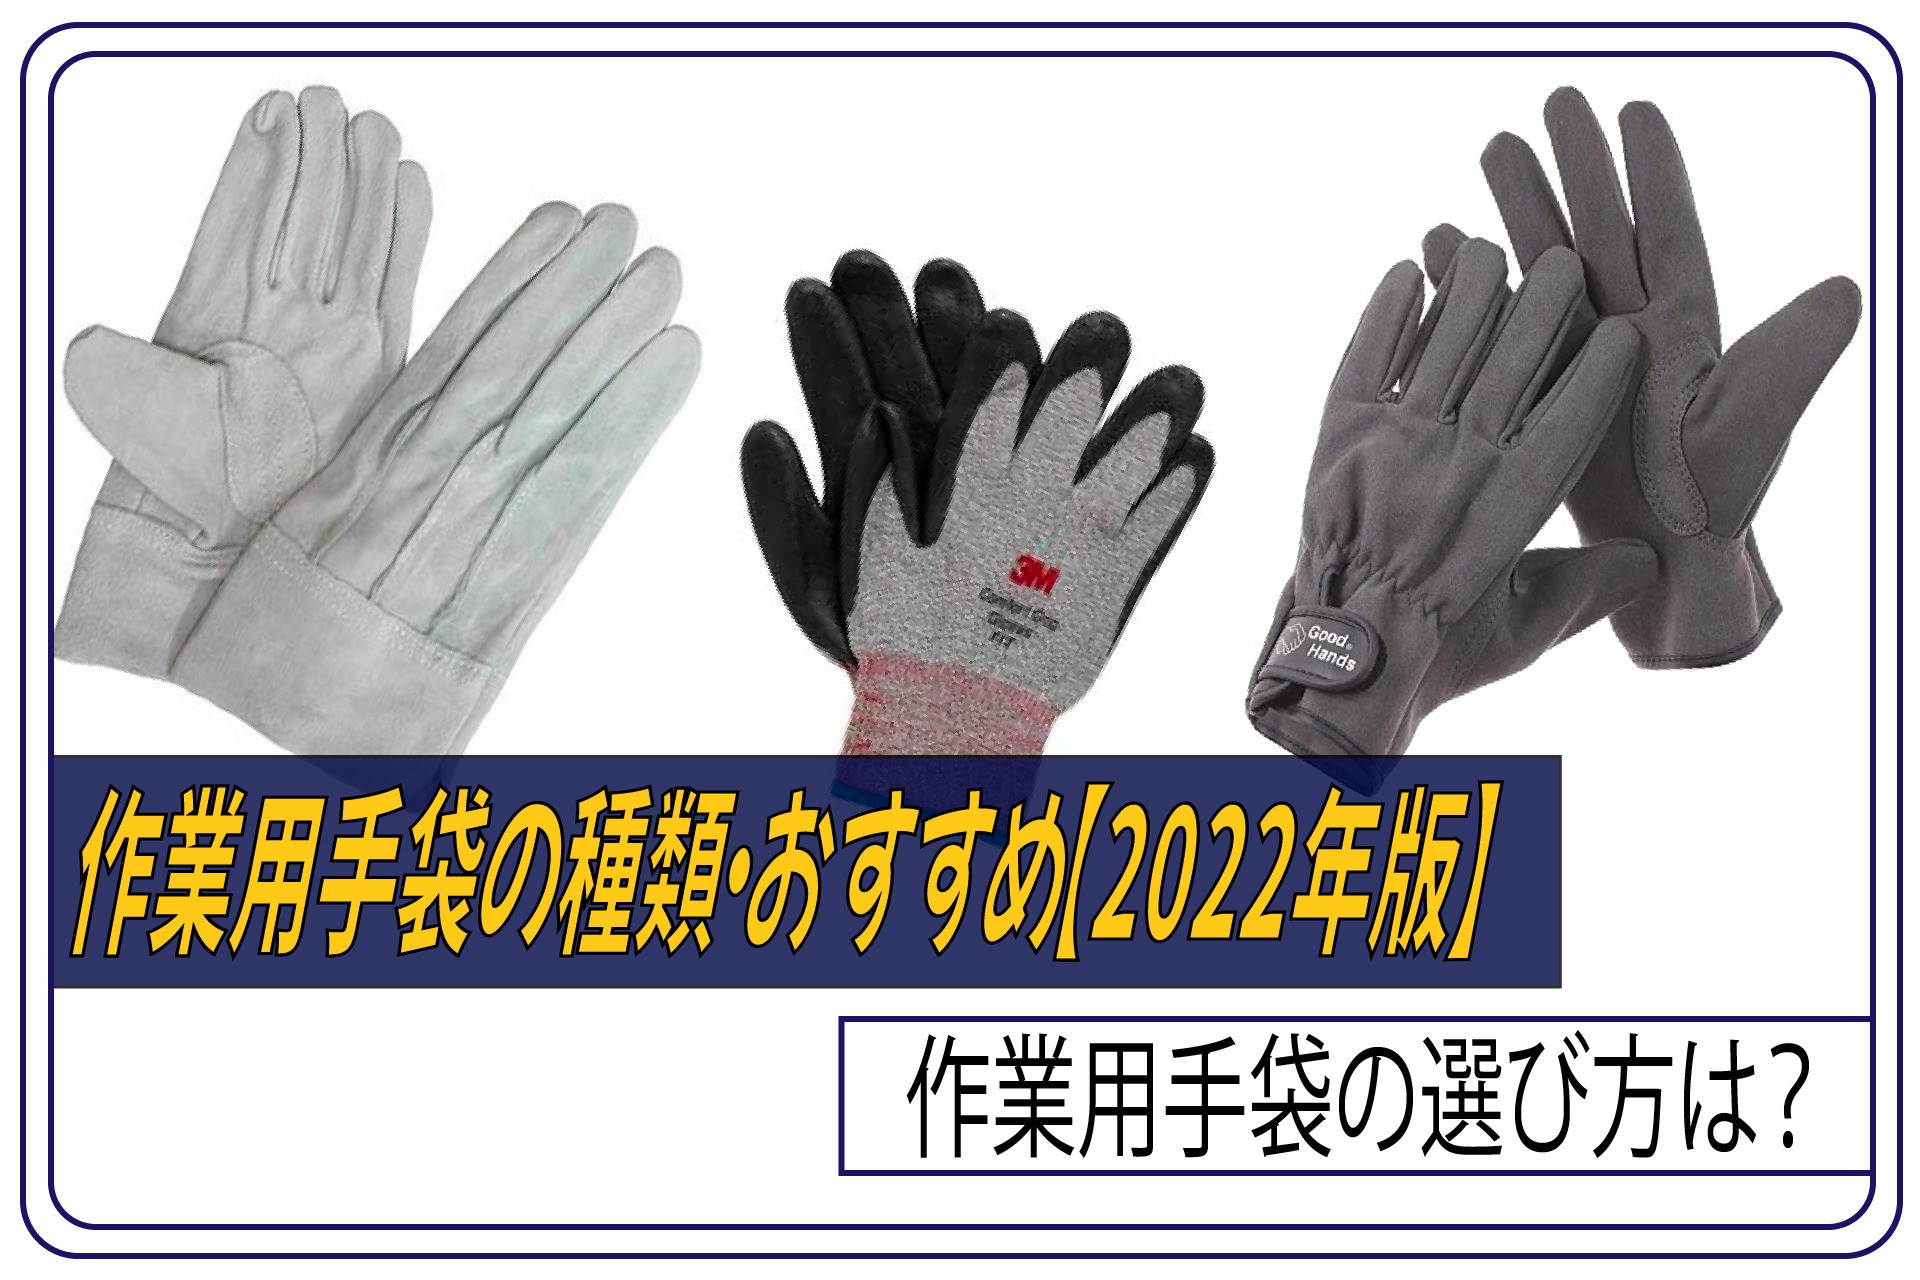 全品送料無料】 作業用革手袋 フリーサイズ 3組セット